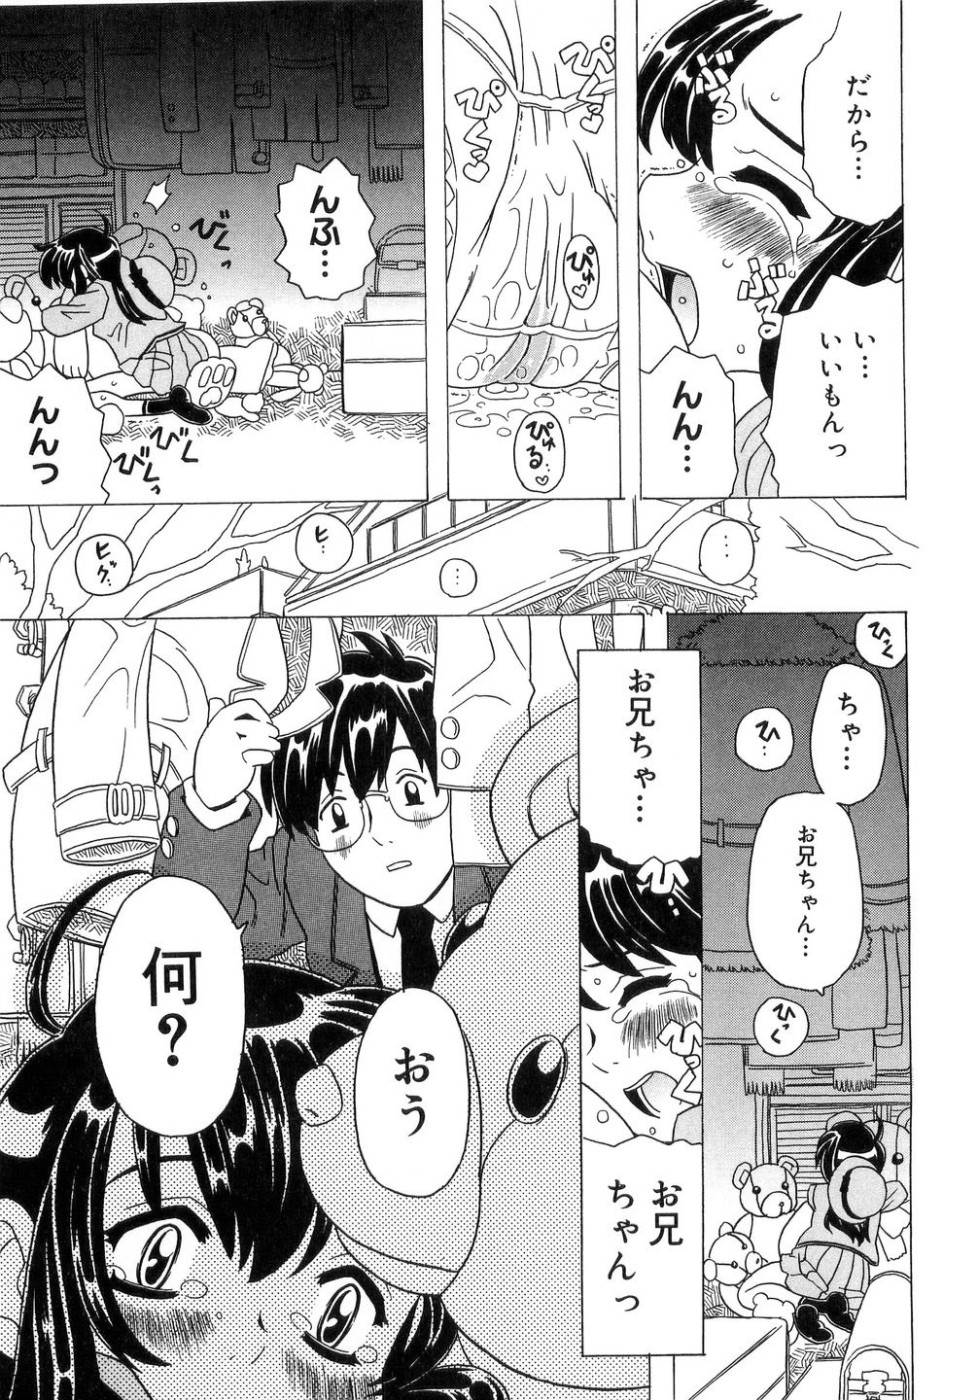 [Gorgeous Takarada] Imouto Gokoro. - Sister's Heart. page 42 full